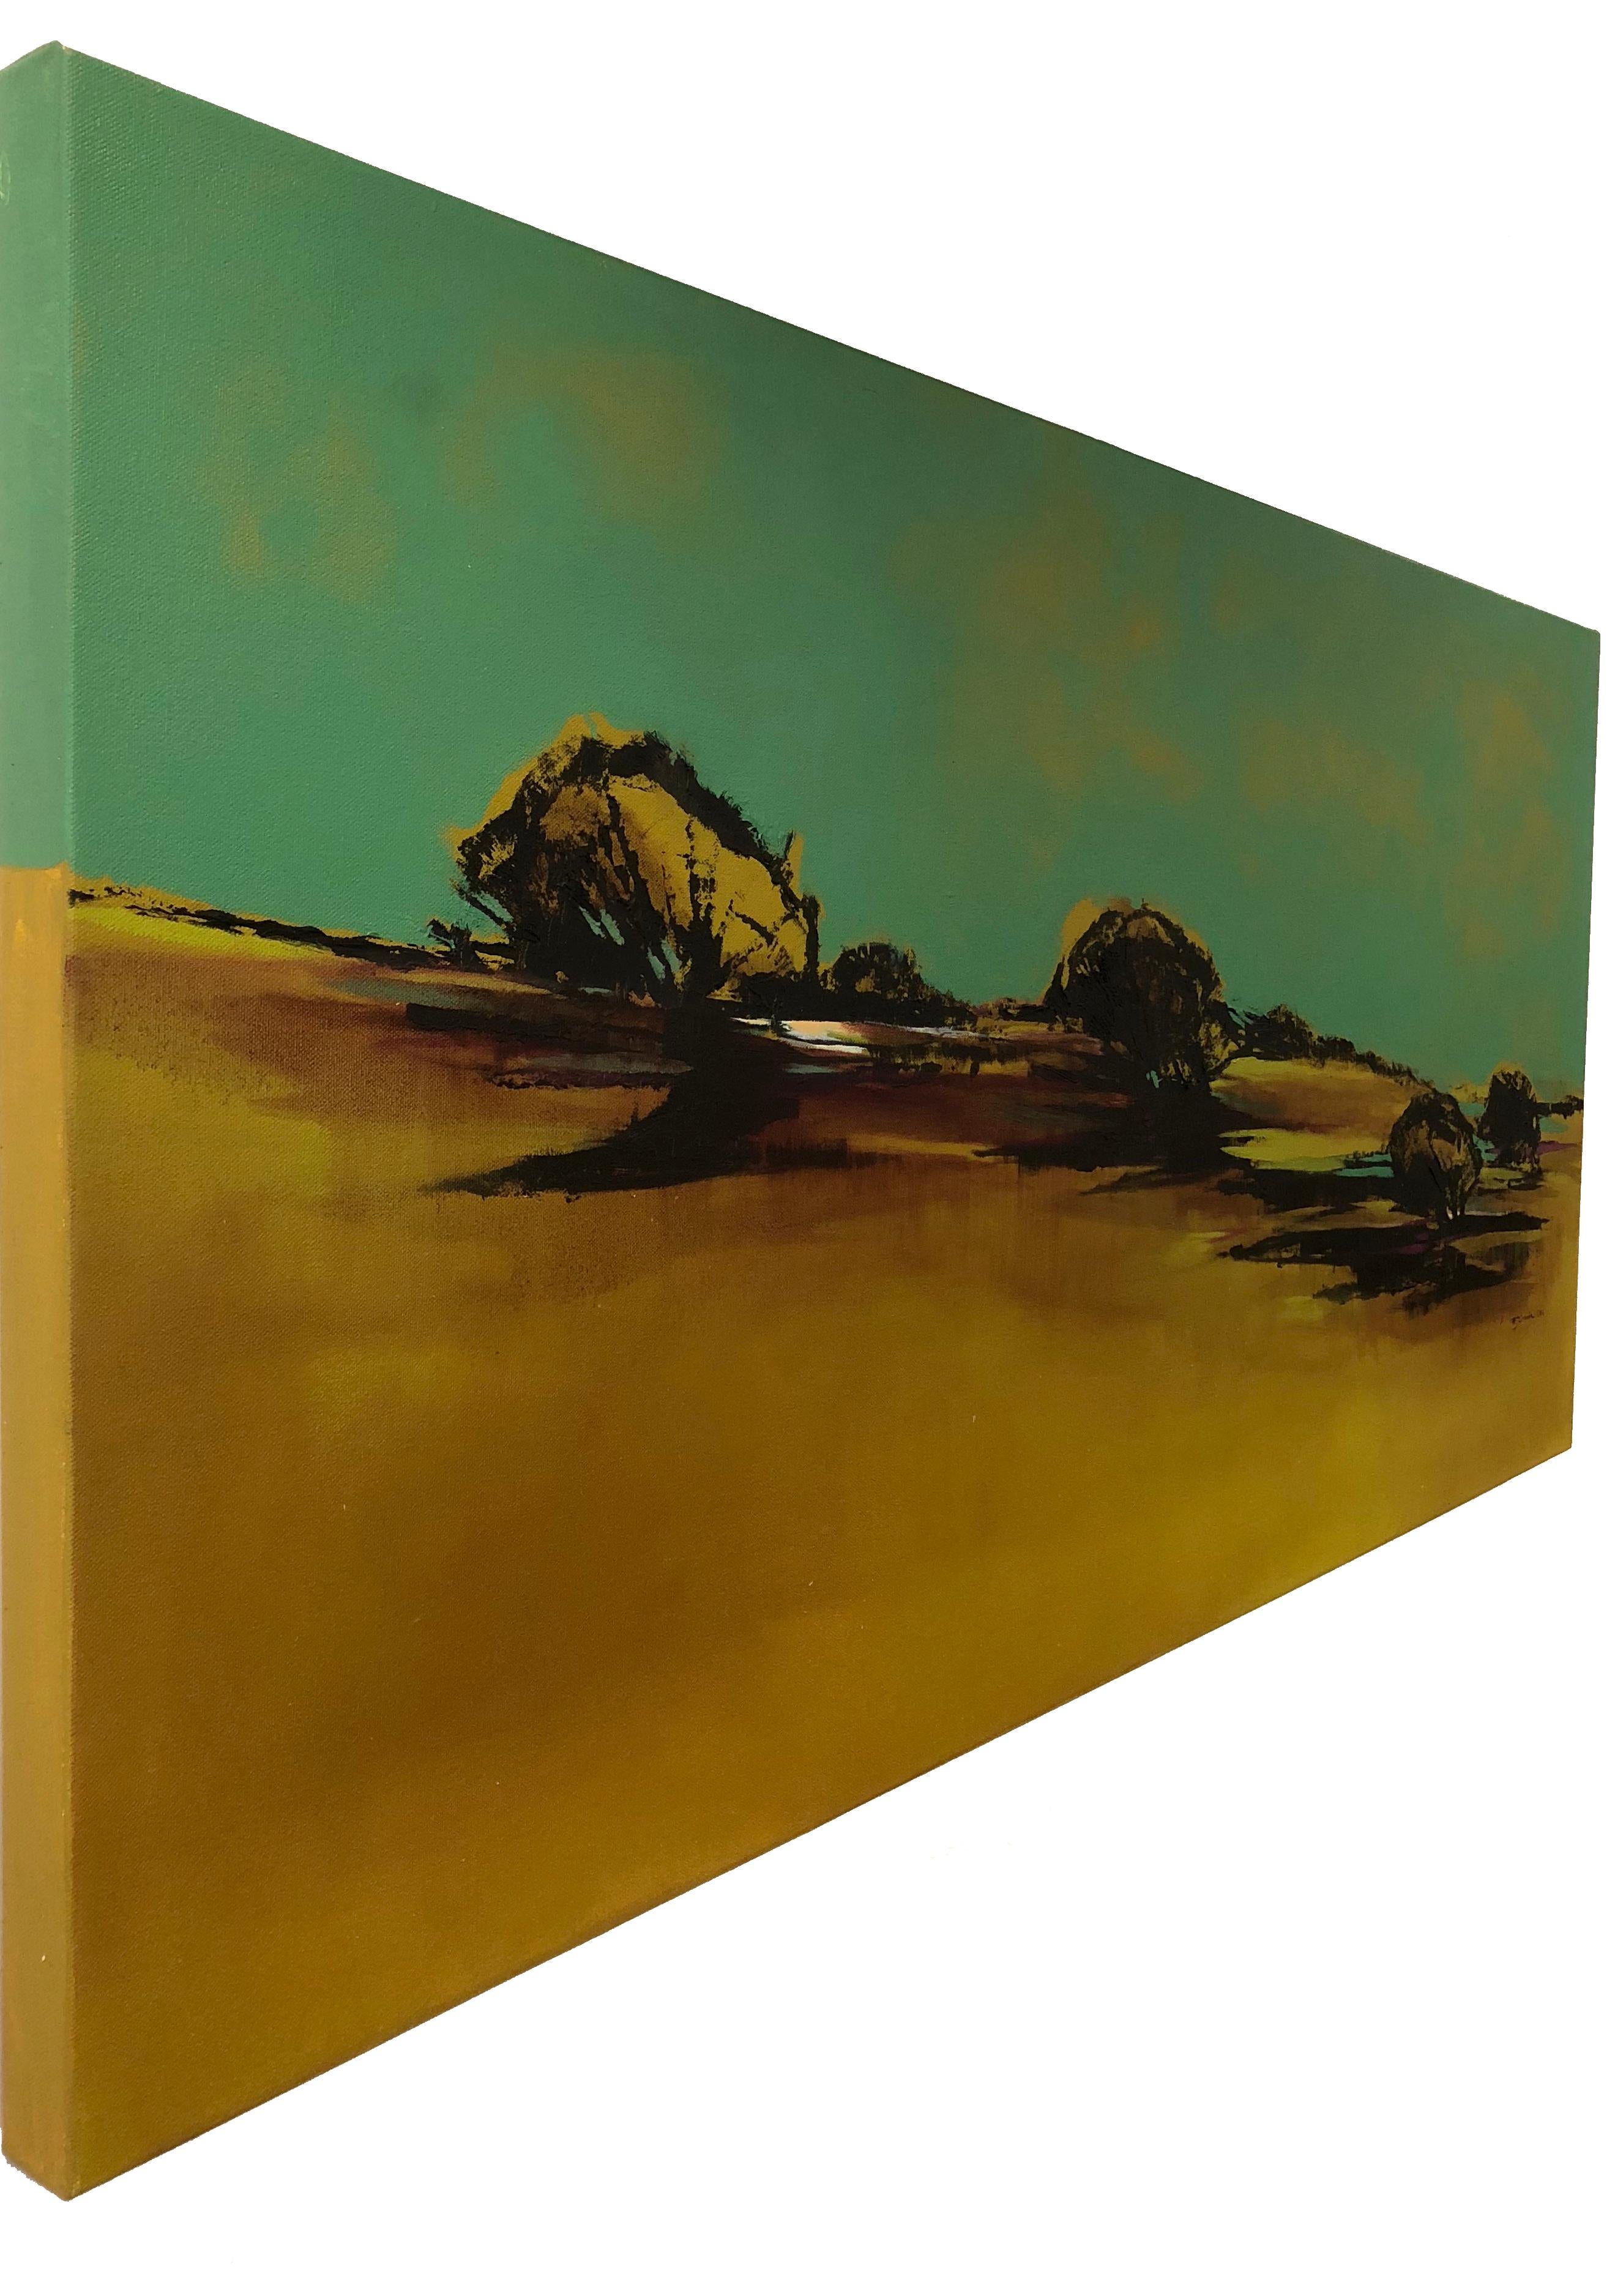 Landscape Reborn, peinture abstraite de paysage à l'arbre, huile sur toile contemporaine - Painting de Maria Jose Concha